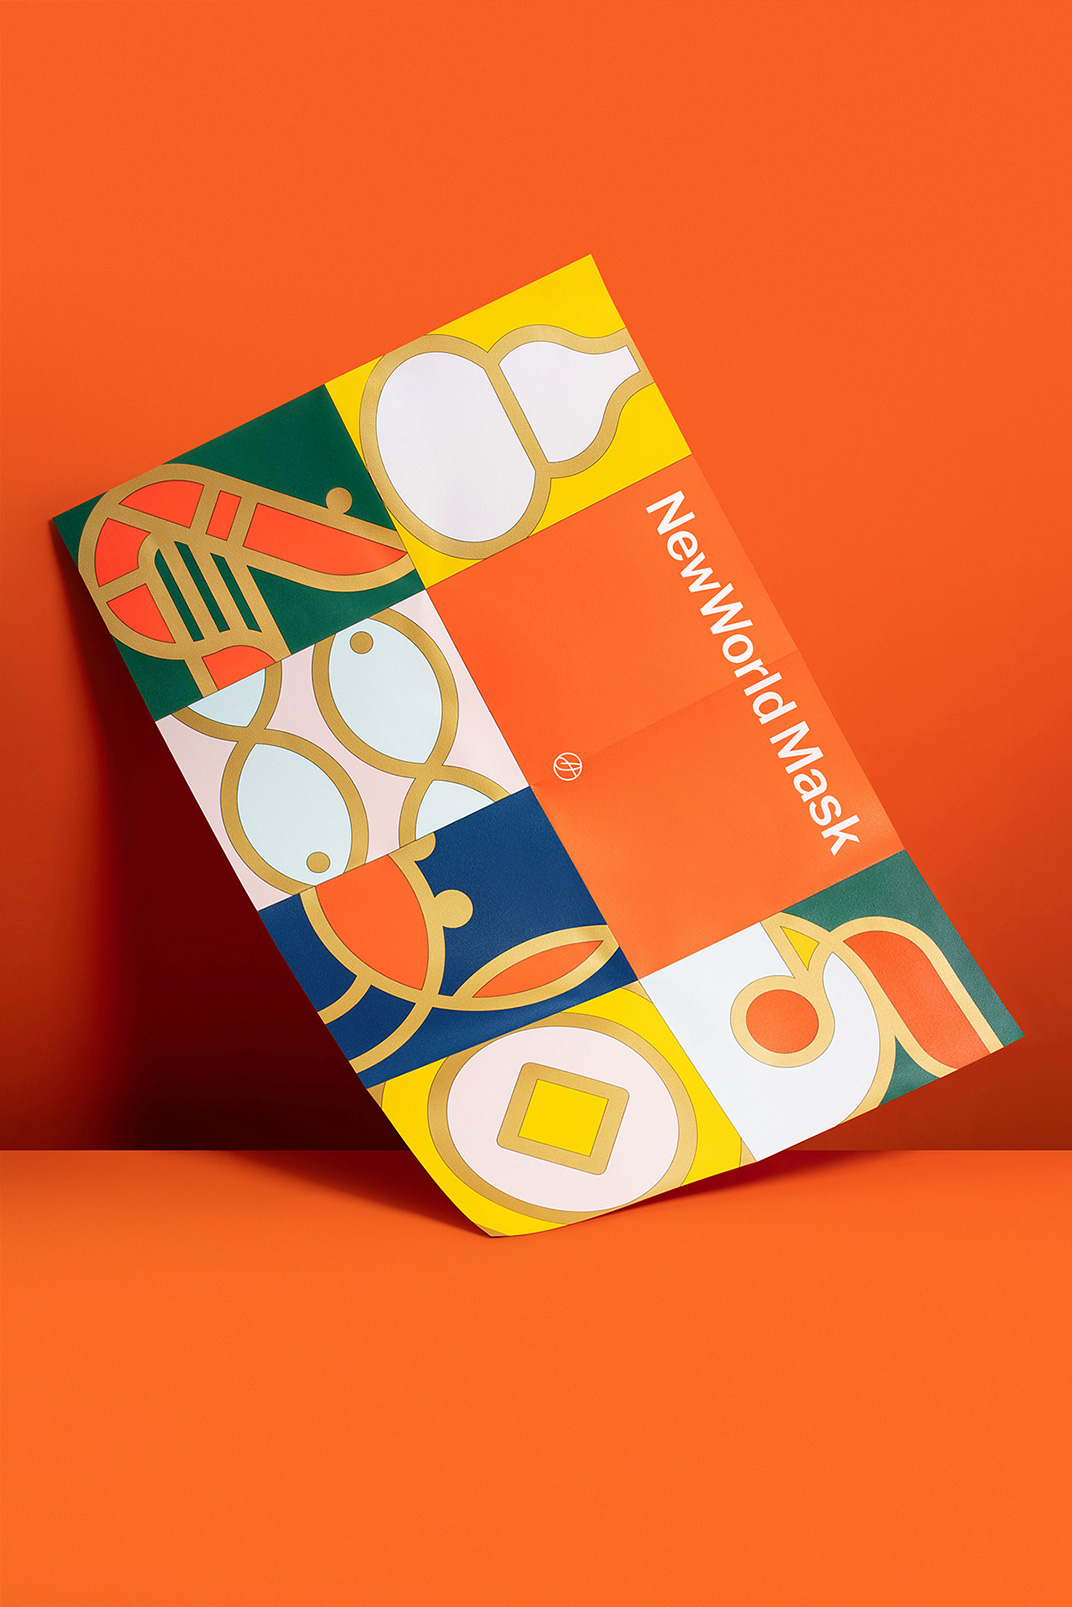 纯正吉祥的亮橙色套装包装设计 香港 礼盒 包装设计 插图设计 橙色 鱼 虾 蟹 鸡 logo设计 vi设计 空间设计